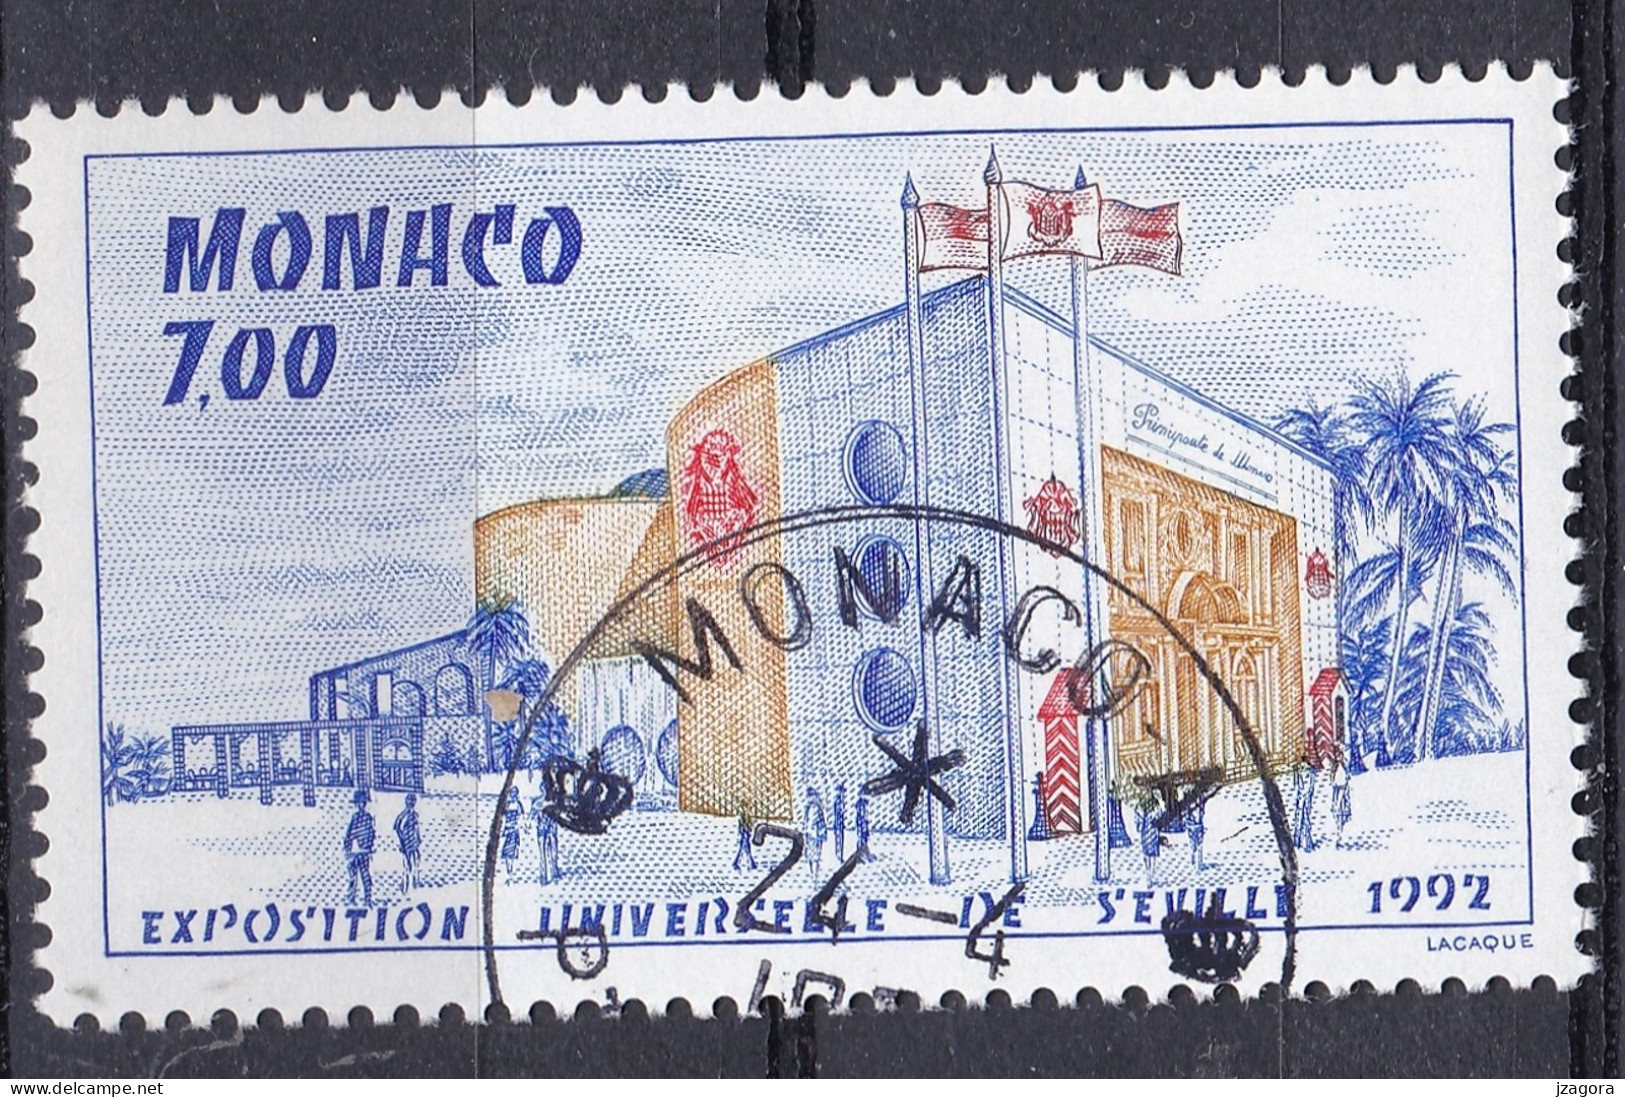 EXPO 1992  EXHIBITION SEVILLA SPAIN - MONACO 2000 MI 2502 USED NH WITH GUM - 1992 – Siviglia (Spagna)